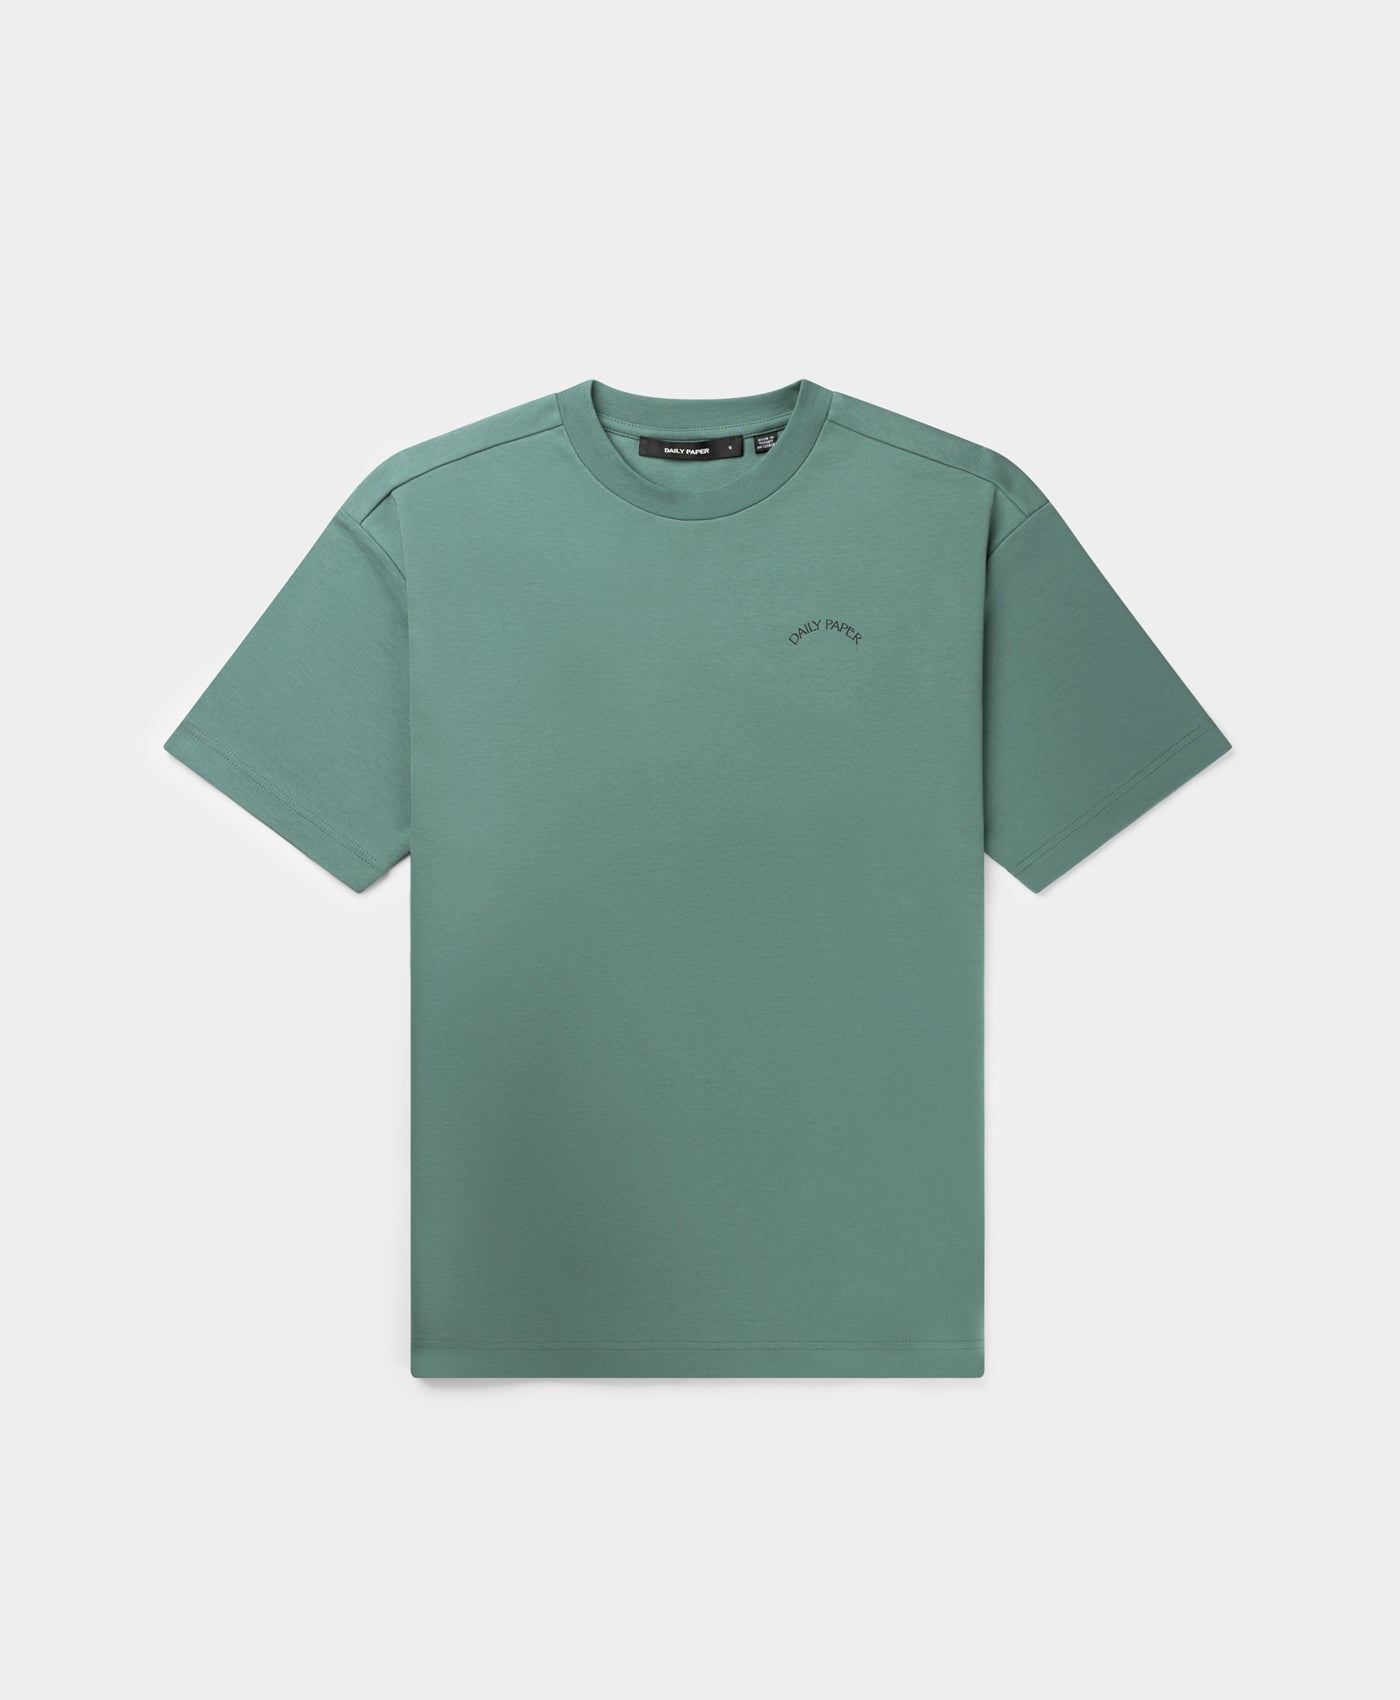 DP - Silver Green Nest Relaxed T-Shirt - Packshot - Rear